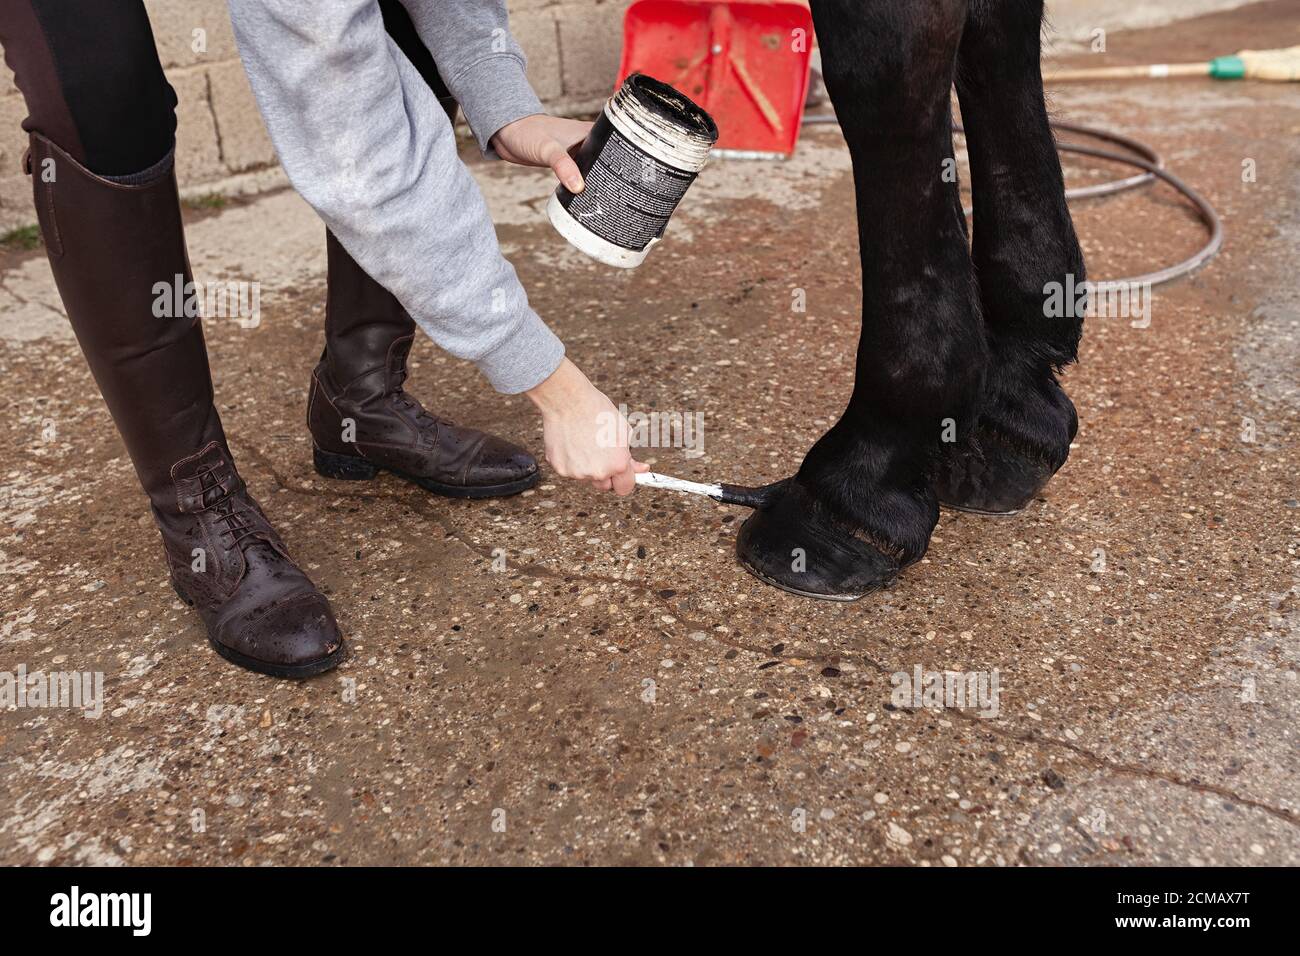 Frau, die schwarze Salbe mit einem Pinsel auf dem Pferdehub verteilt und die Salbe in der Hand hält Stockfoto